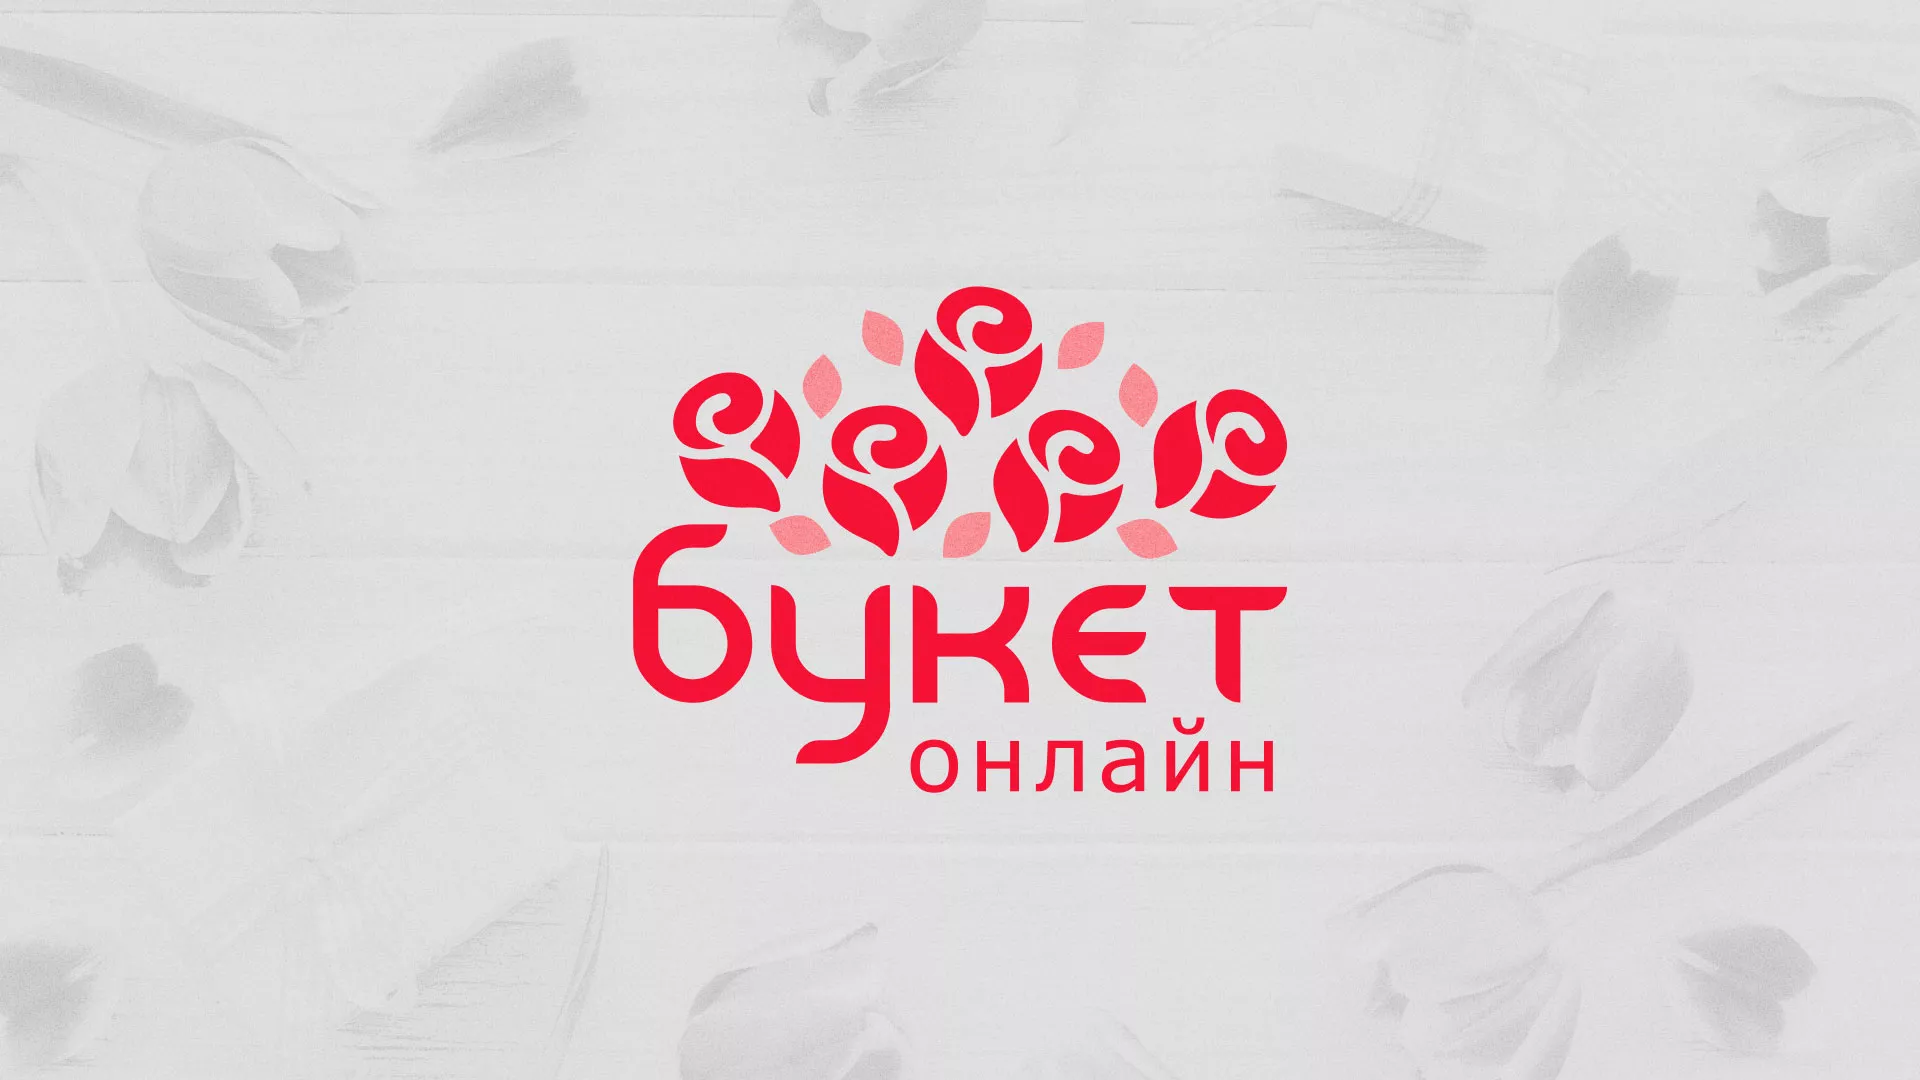 Создание интернет-магазина «Букет-онлайн» по цветам в Жуковском